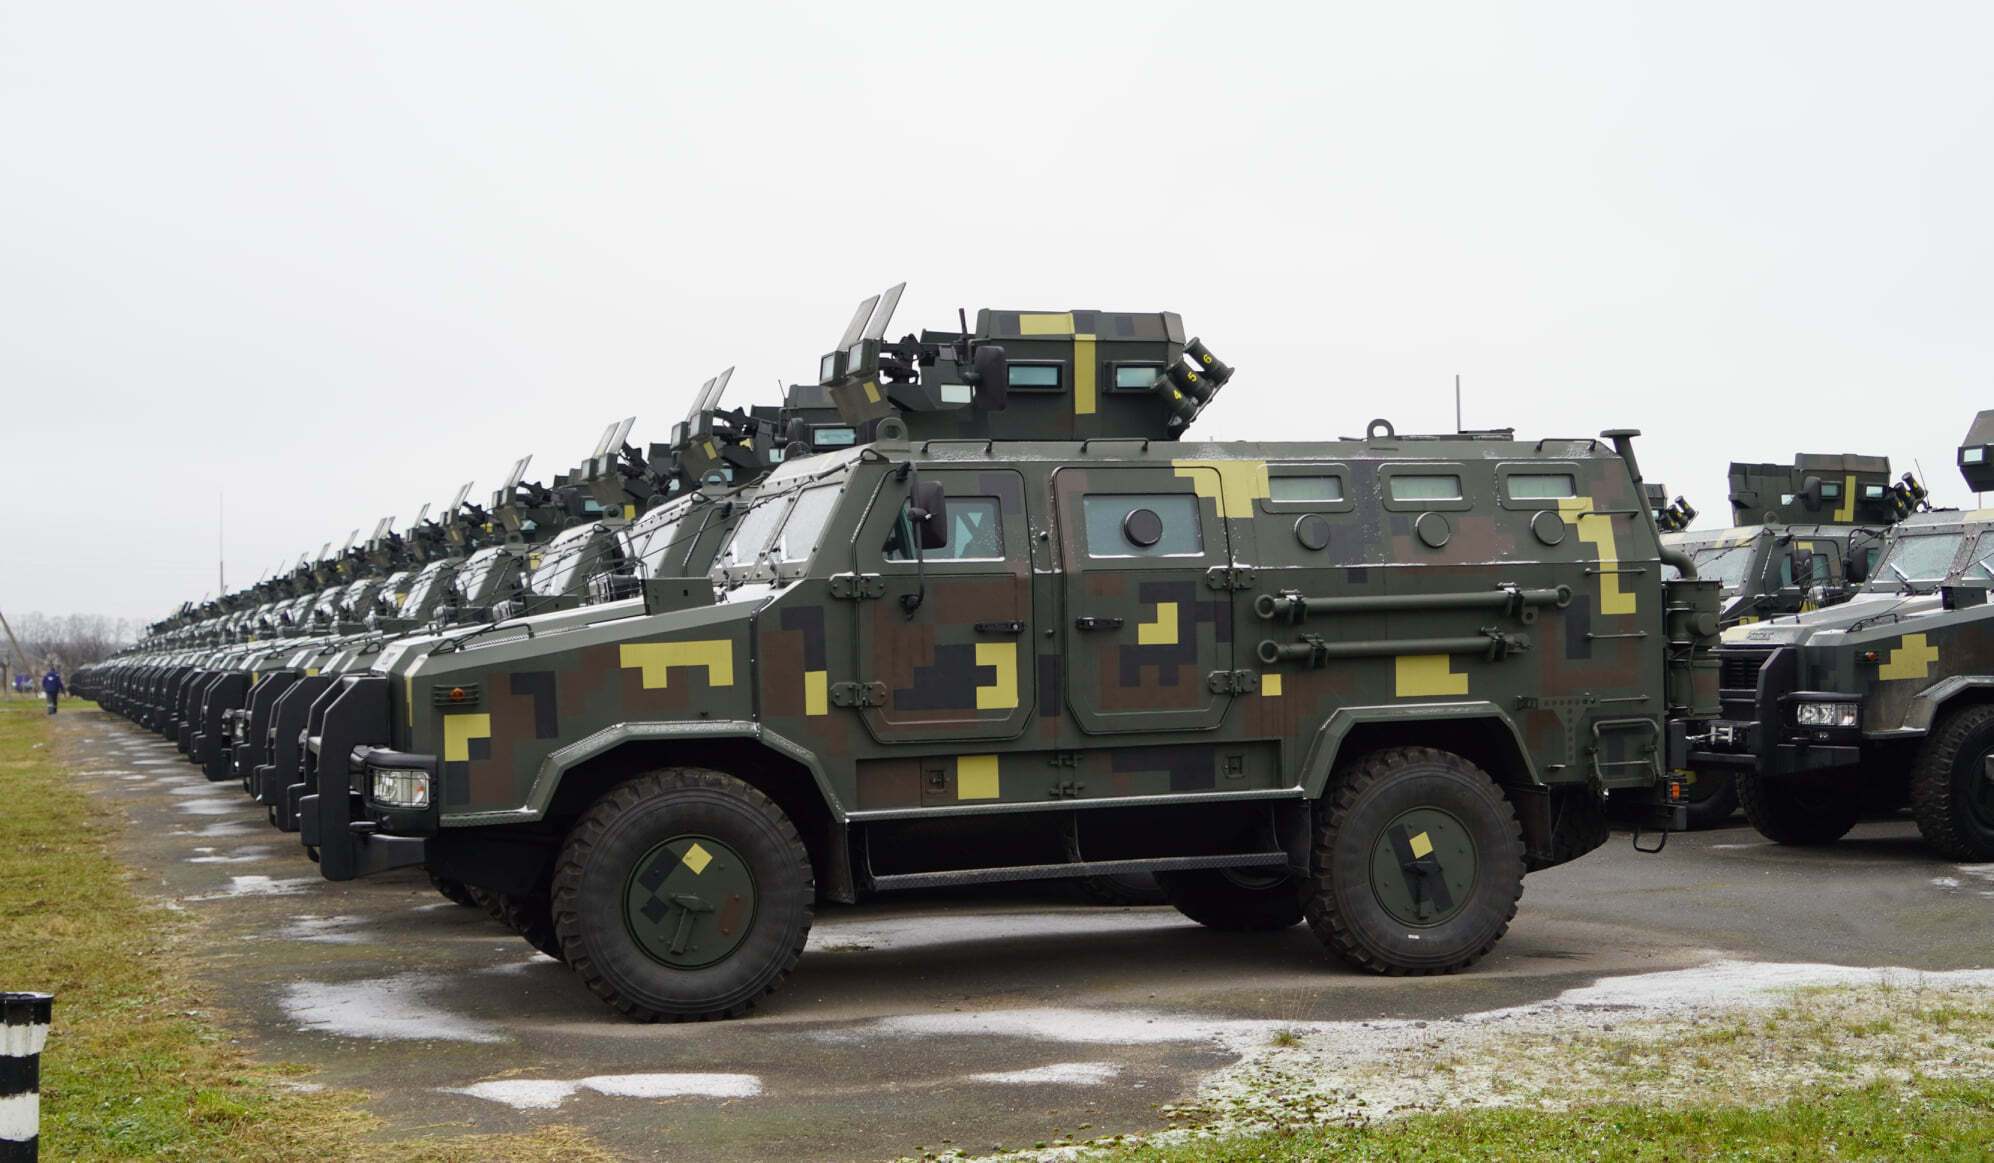 Всього на озброєнні у ЗСУ 240 машин "Козак-2".